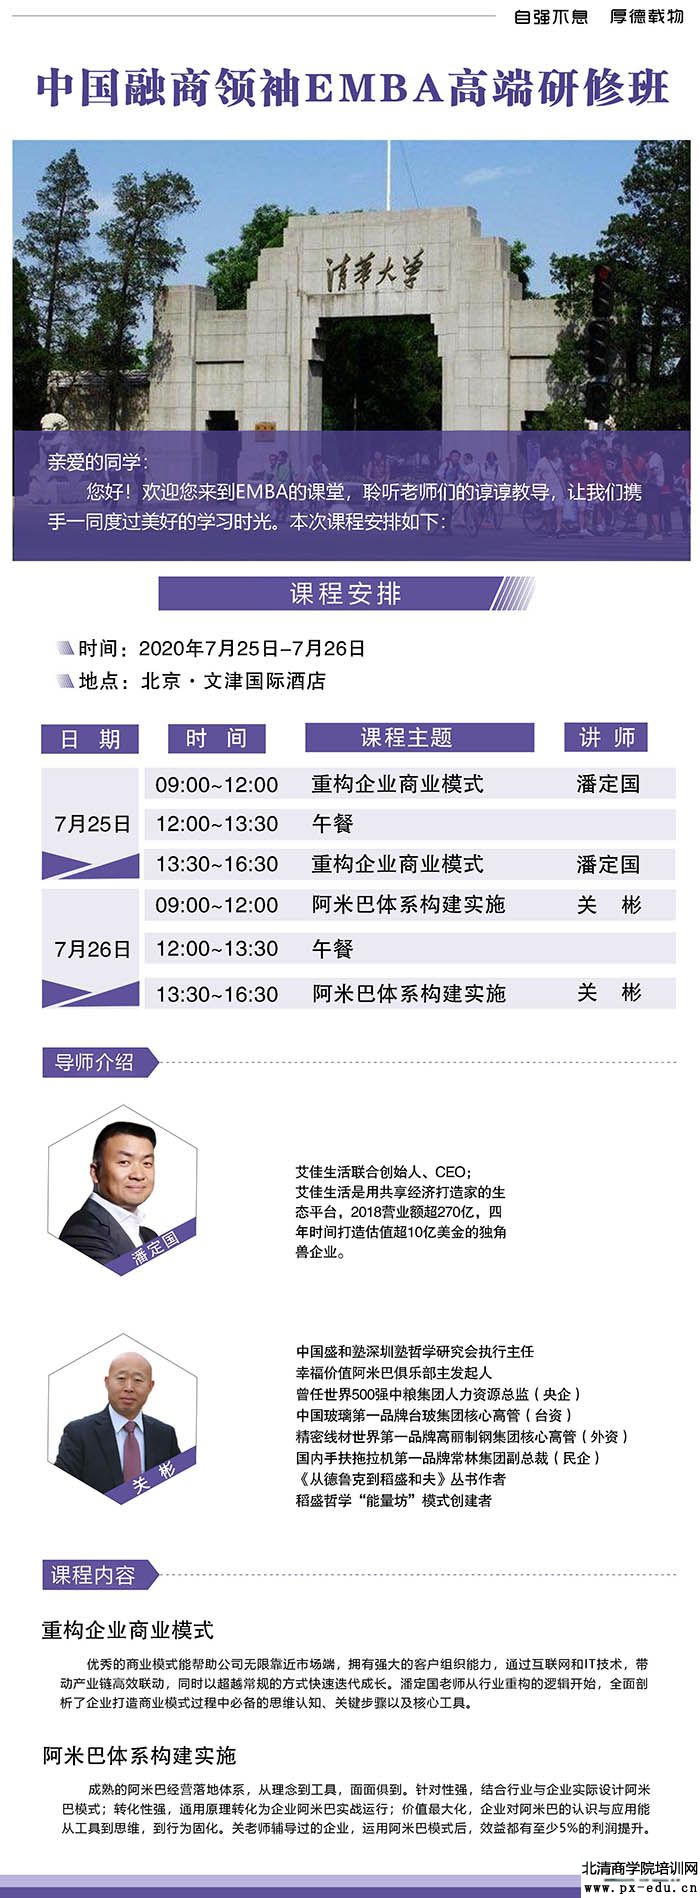 7月25-26日中国融商领袖EMBA高端研修班上课通知